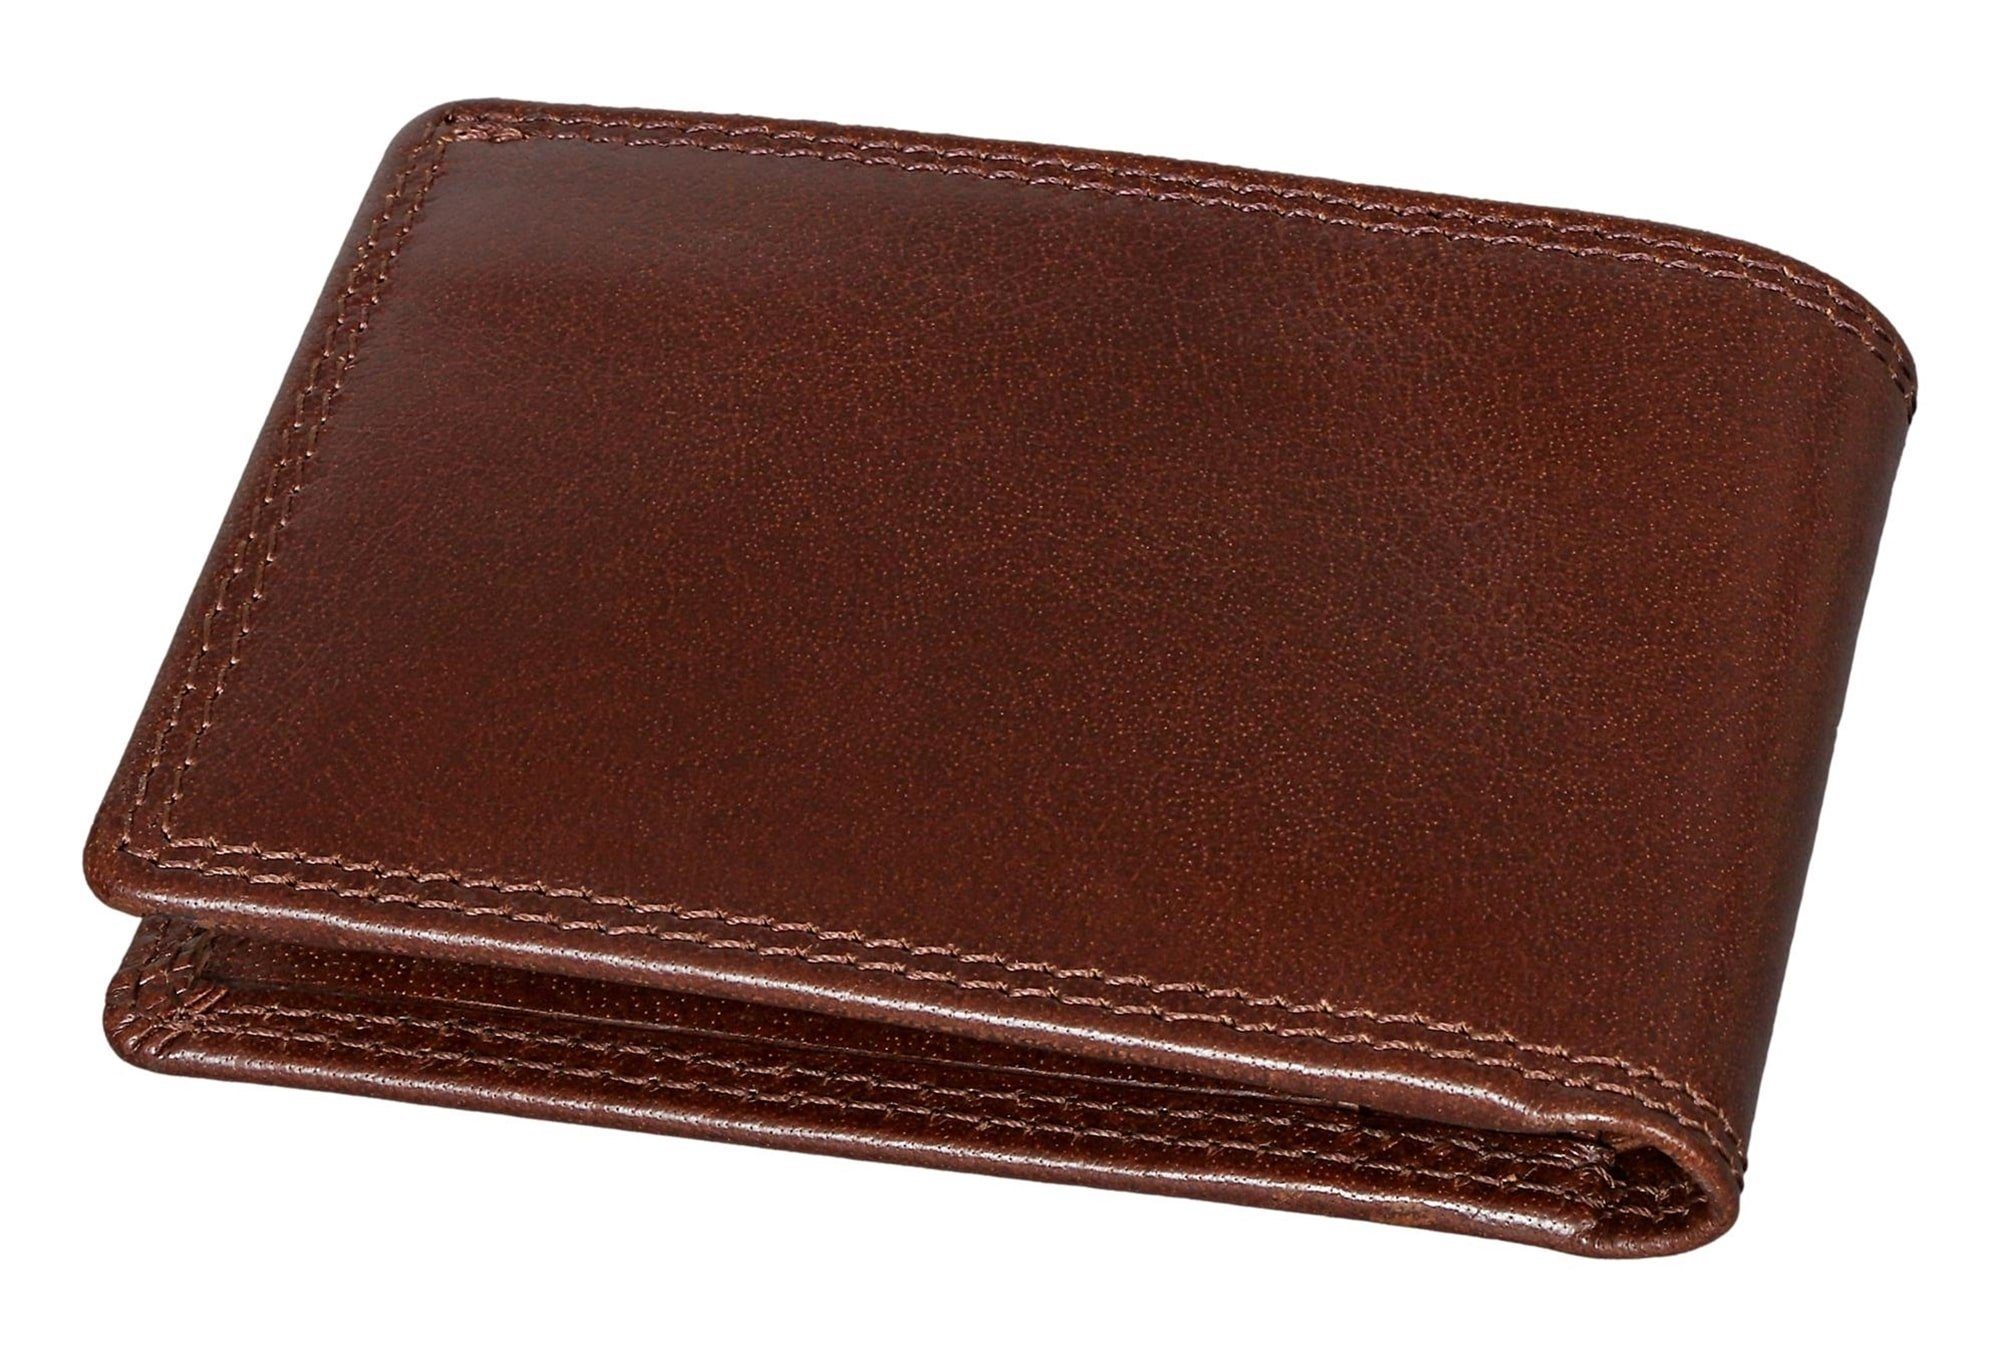 und 4 8006-B Modell Braun Farbe Bear - Portemonnaie Geldbörse Toscana Mini Brown Kartenfächern Mini aus RFID-Schutz Echtleder, mit